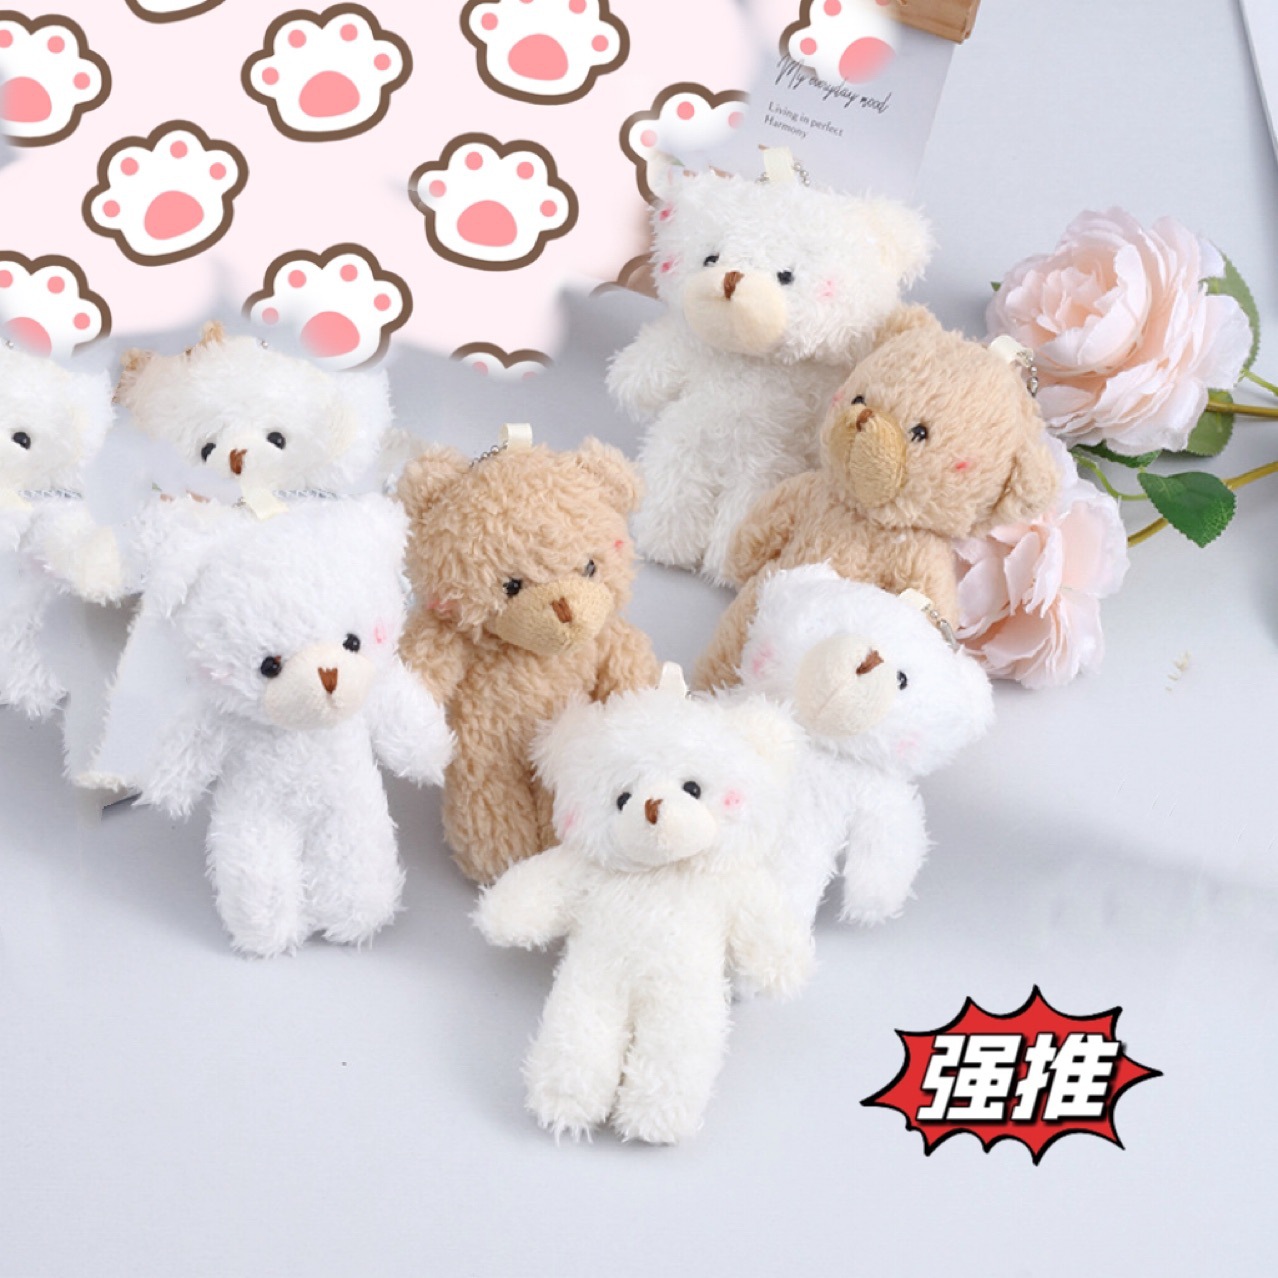 Móc khoá gấu bông cute dễ thương giá rẻ đẹp treo balo túi xách làm quà tặng